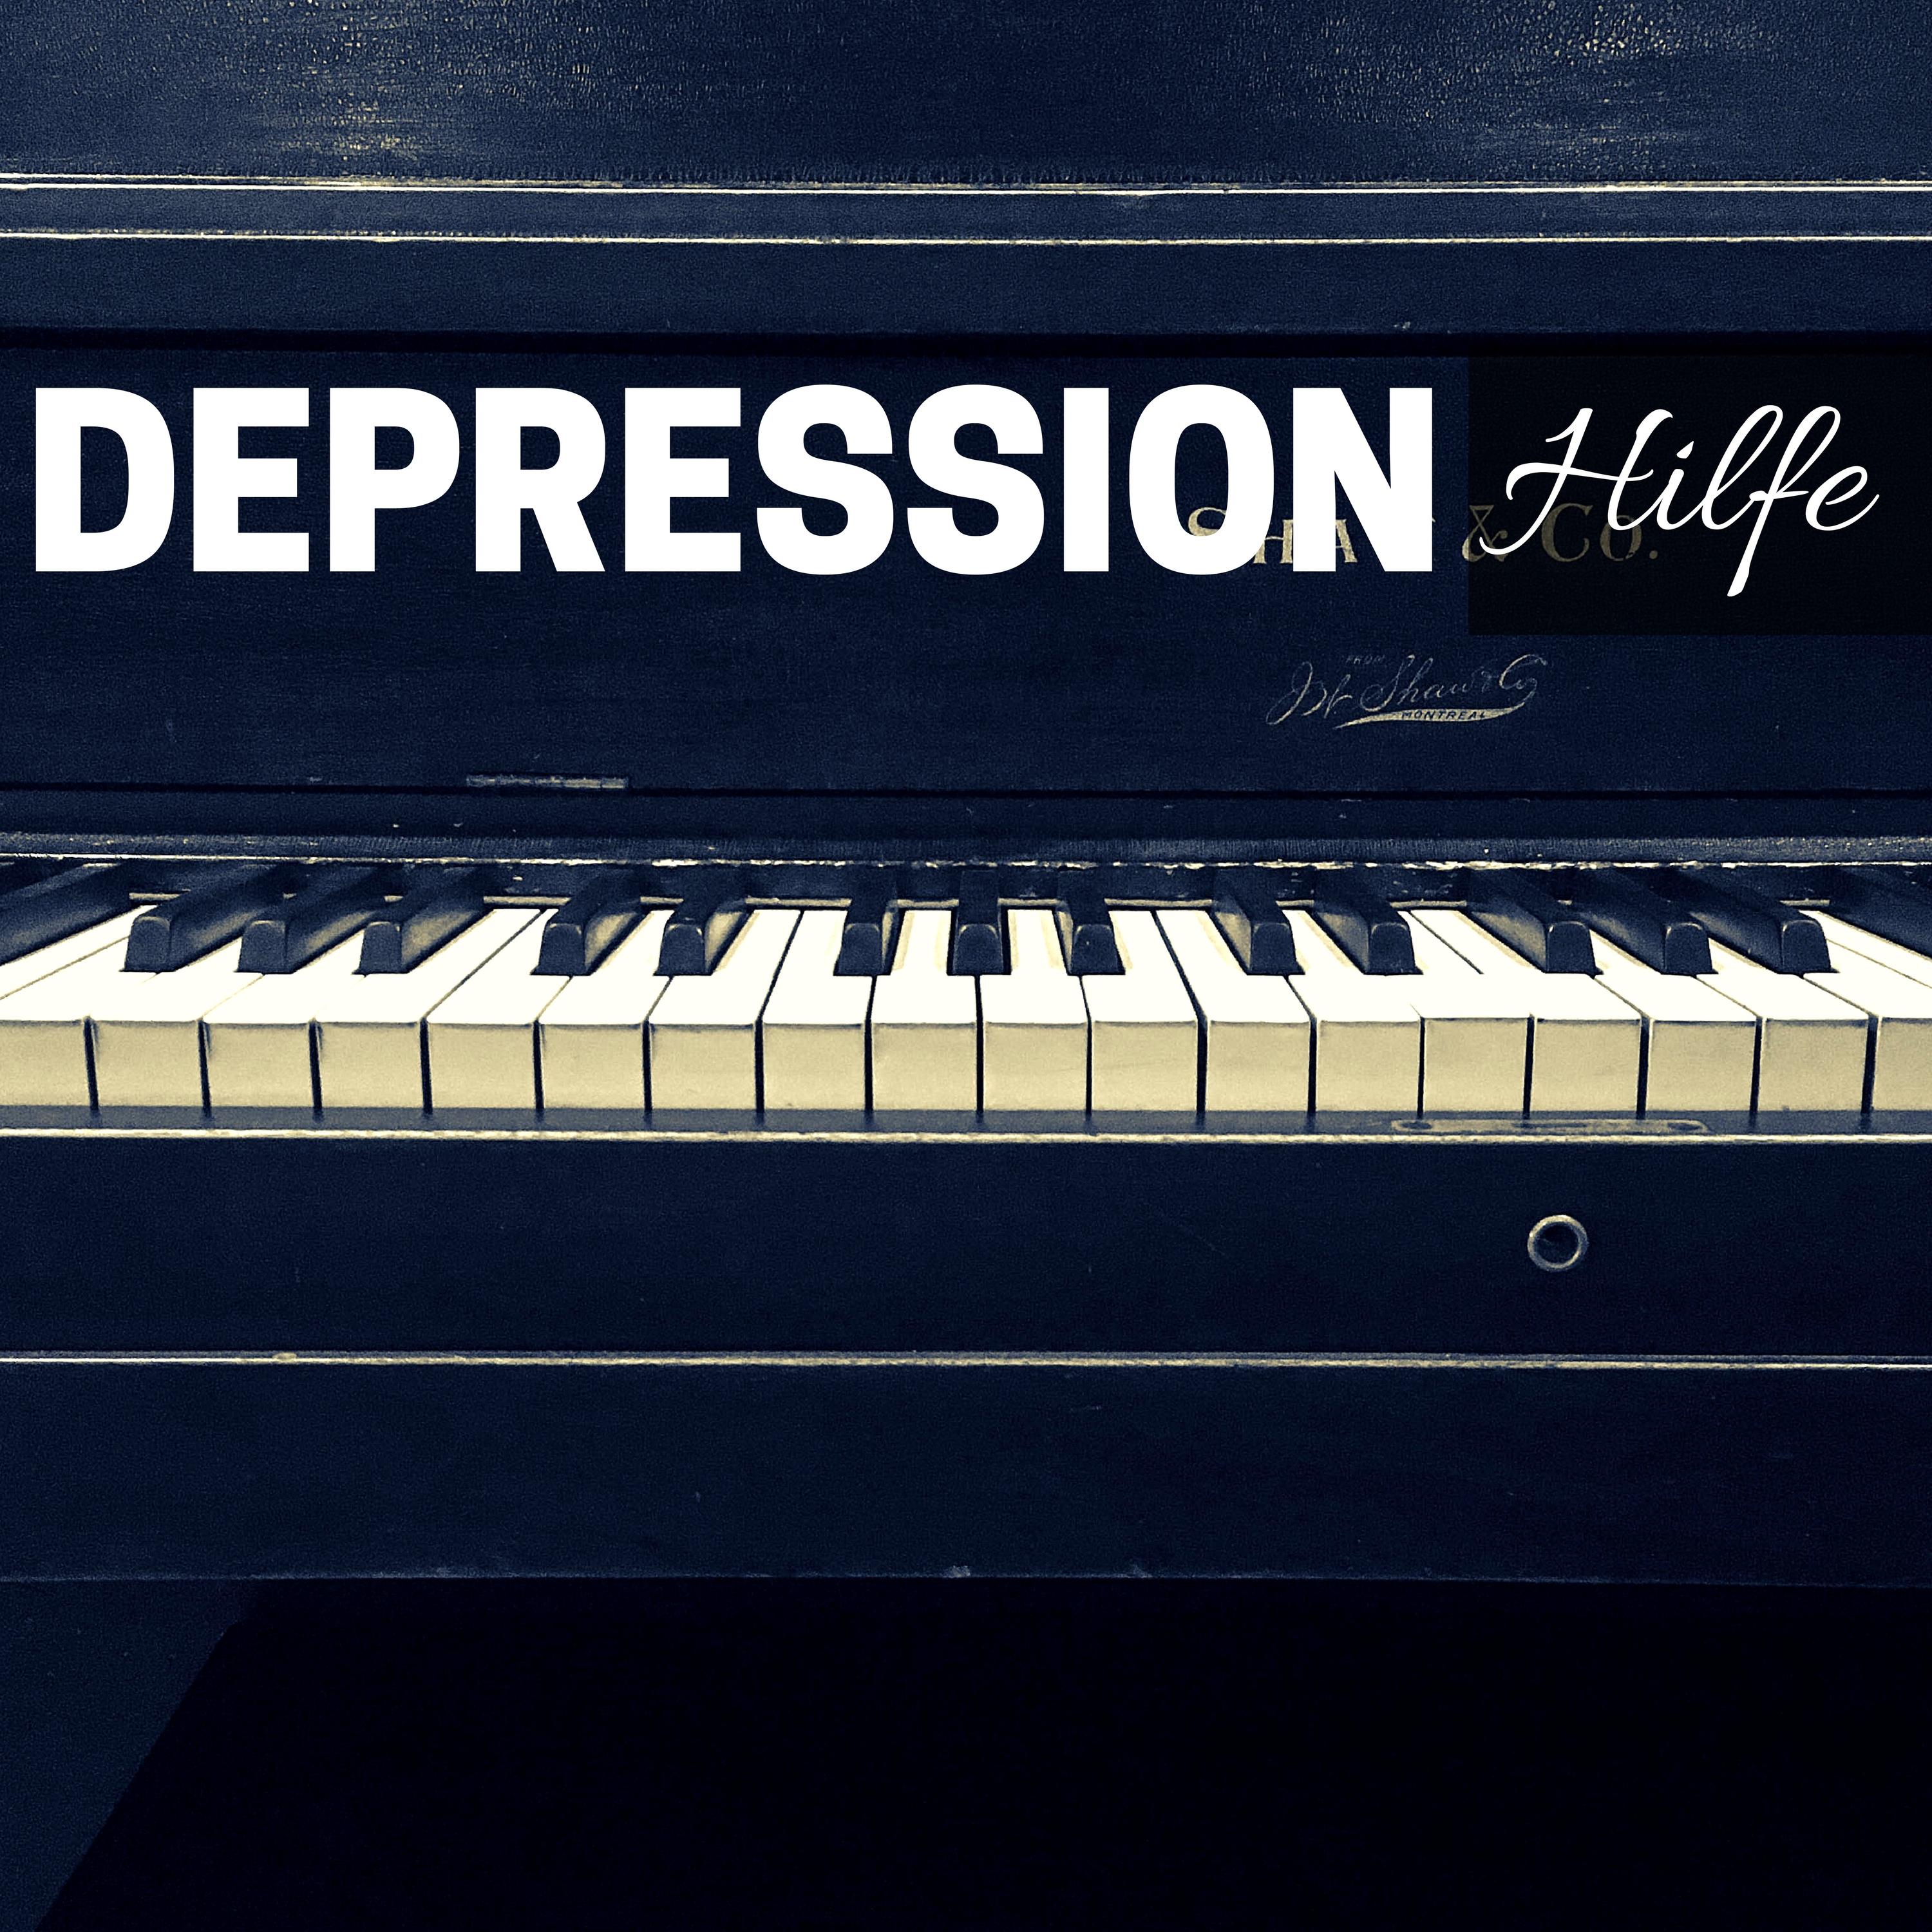 Depression Hilfe